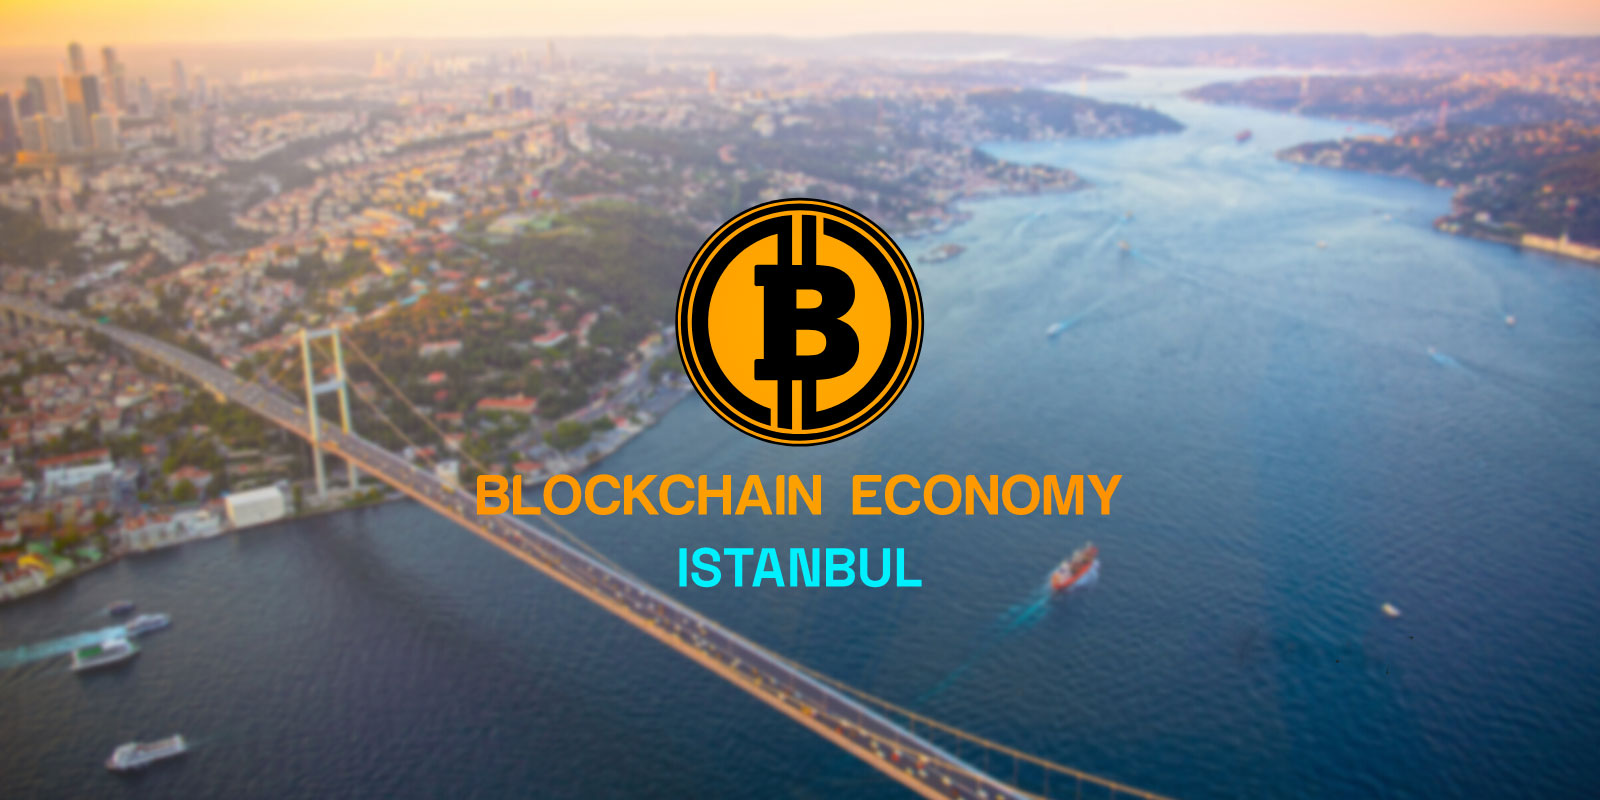 کنفرانس اقتصاد بلاک چین استانبول: بازار ارزهای دیجیتال در وضعیت خوبی قرار دارد